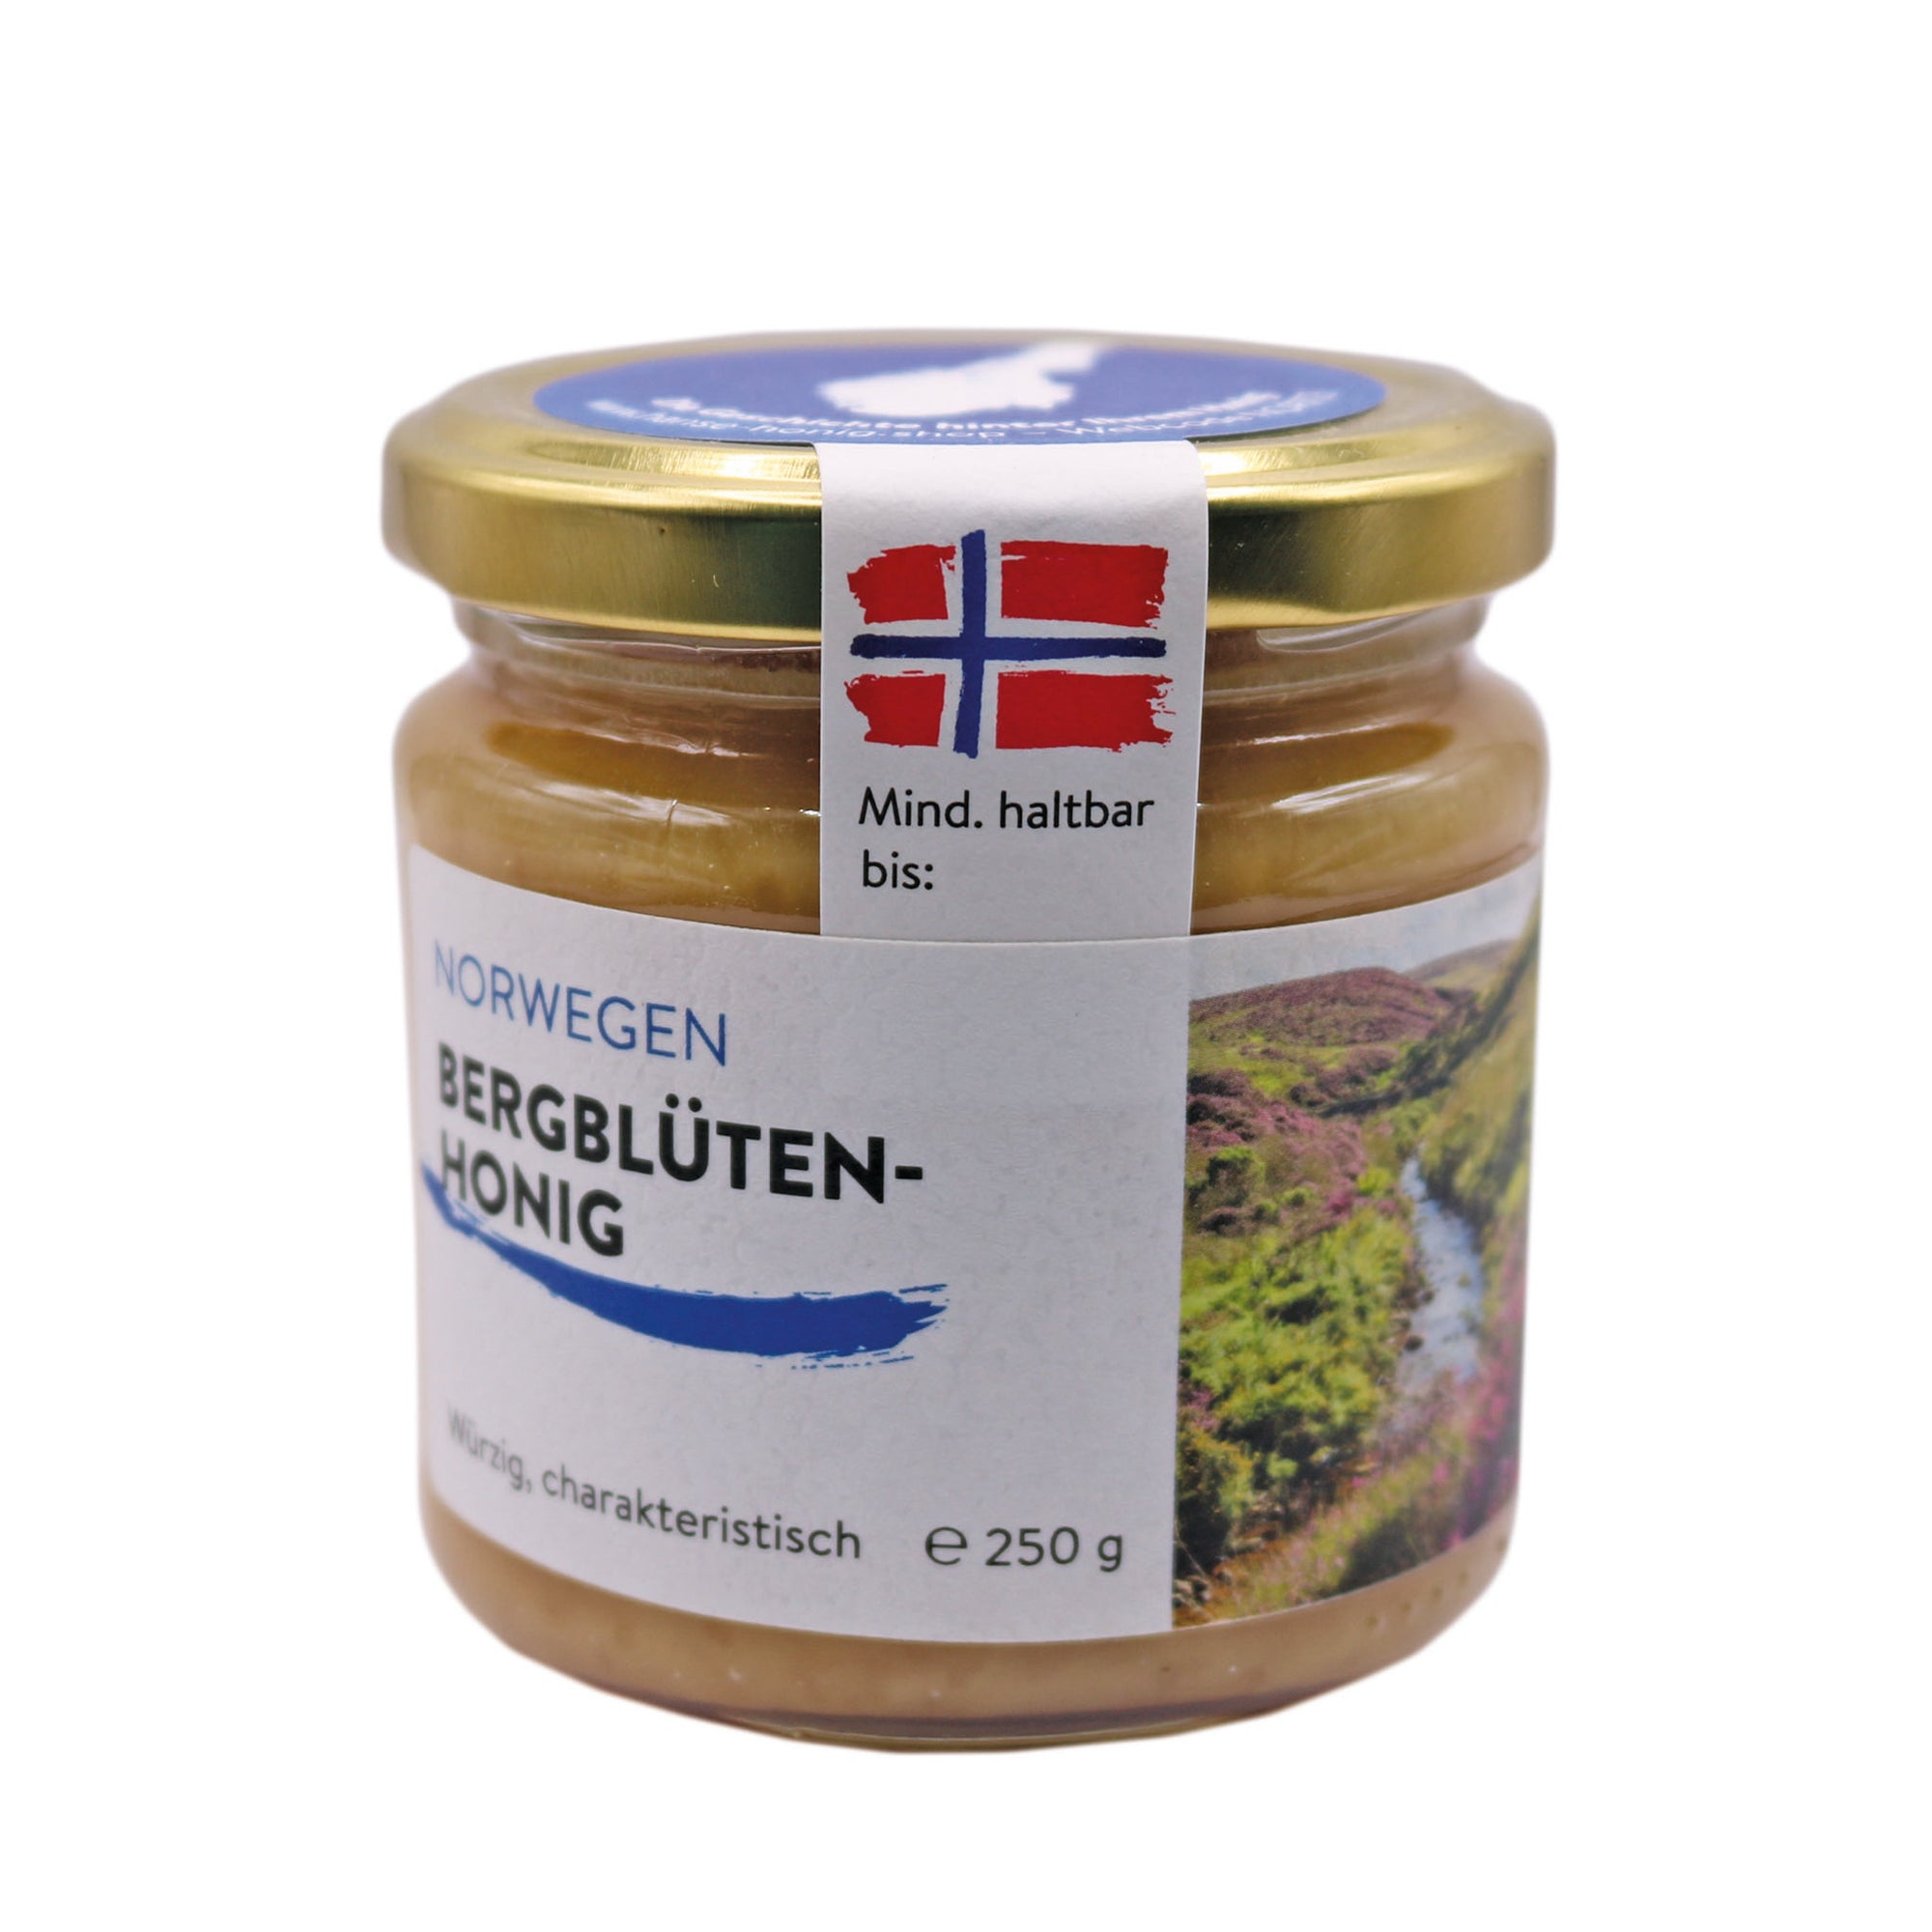 Norwegian mountain blossom honey 250g